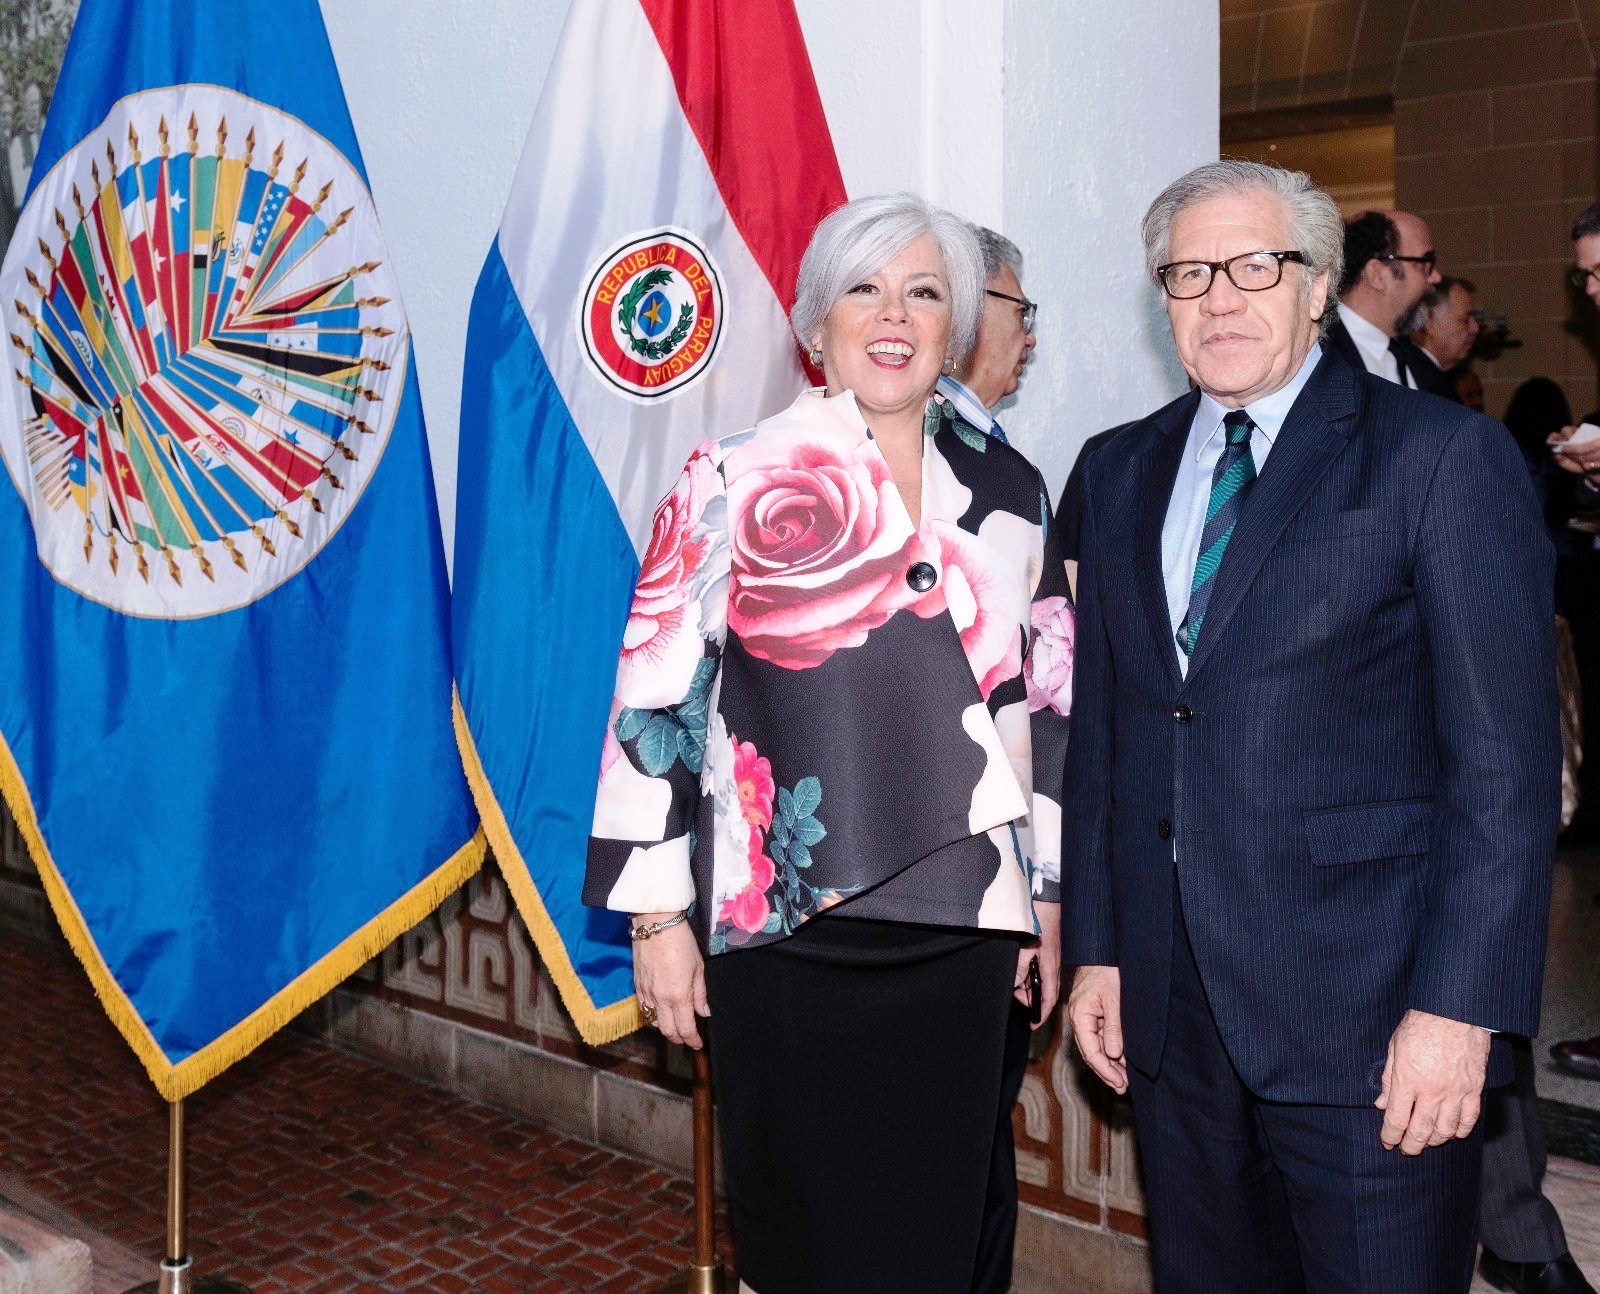 La Misión Permanente de Paraguay en la OEA celebró los 208 años de independencia del Paraguay